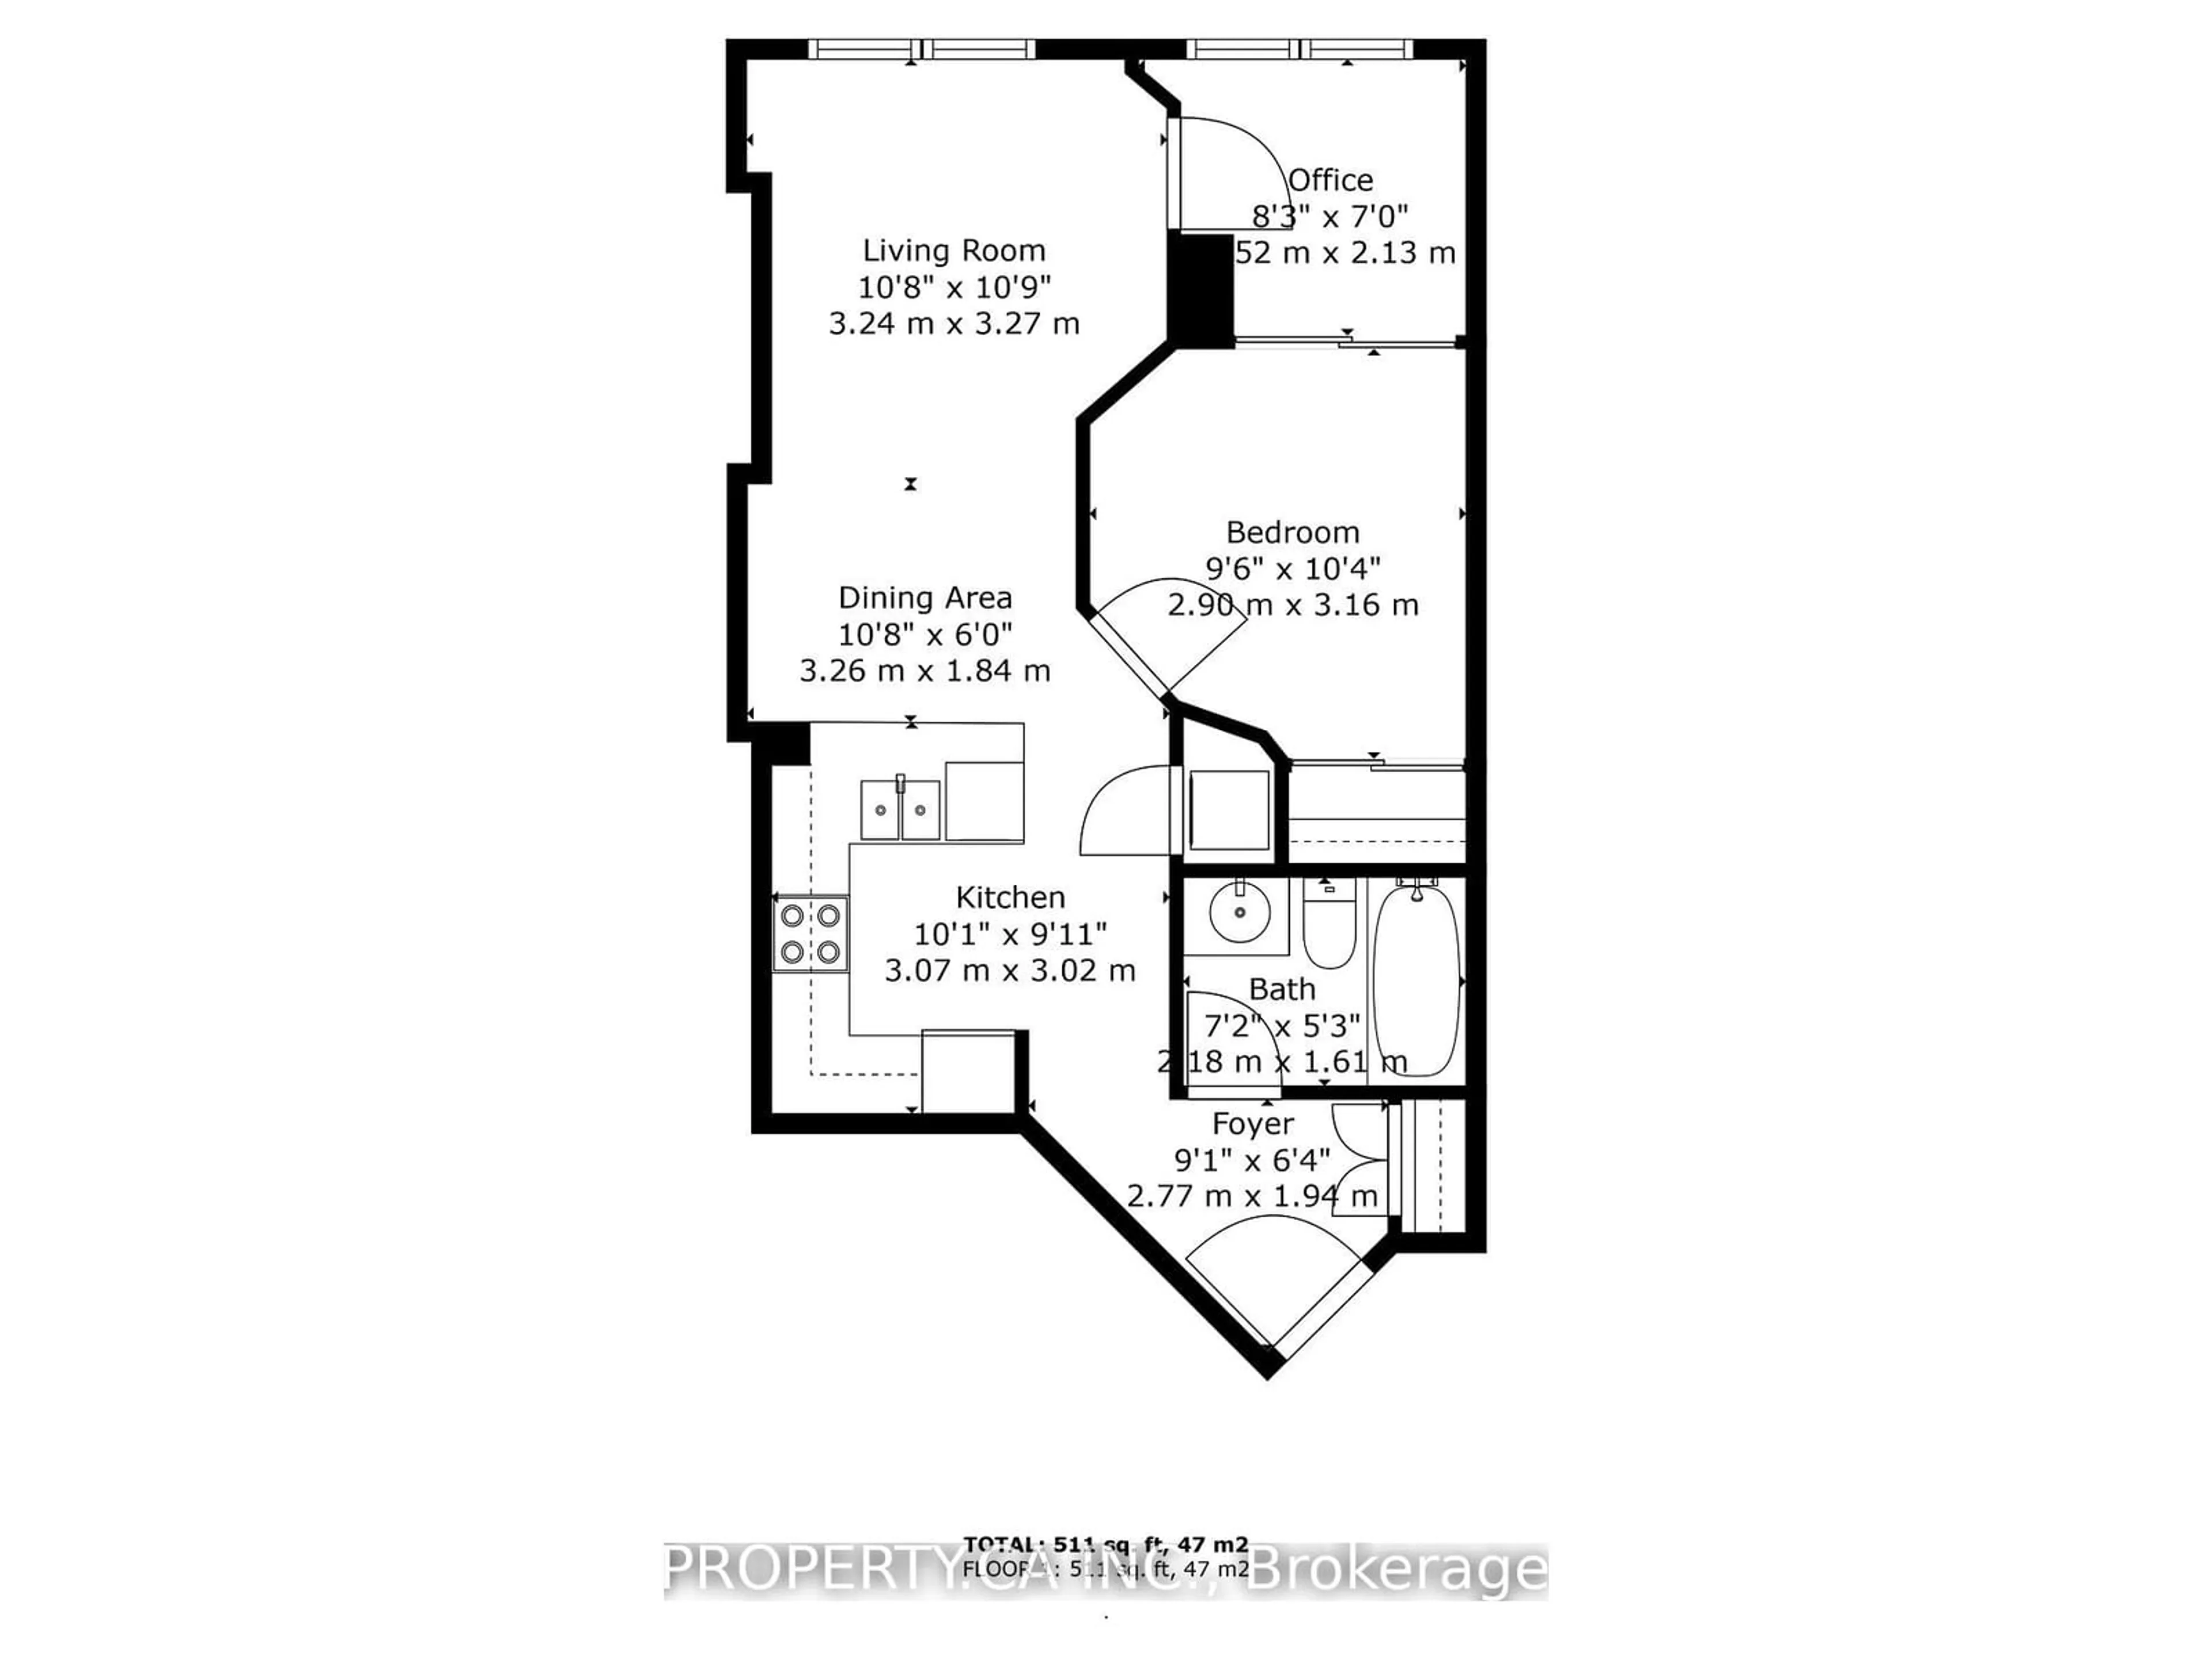 Floor plan for 55 Bloor St #203, Toronto Ontario M4W 3W6